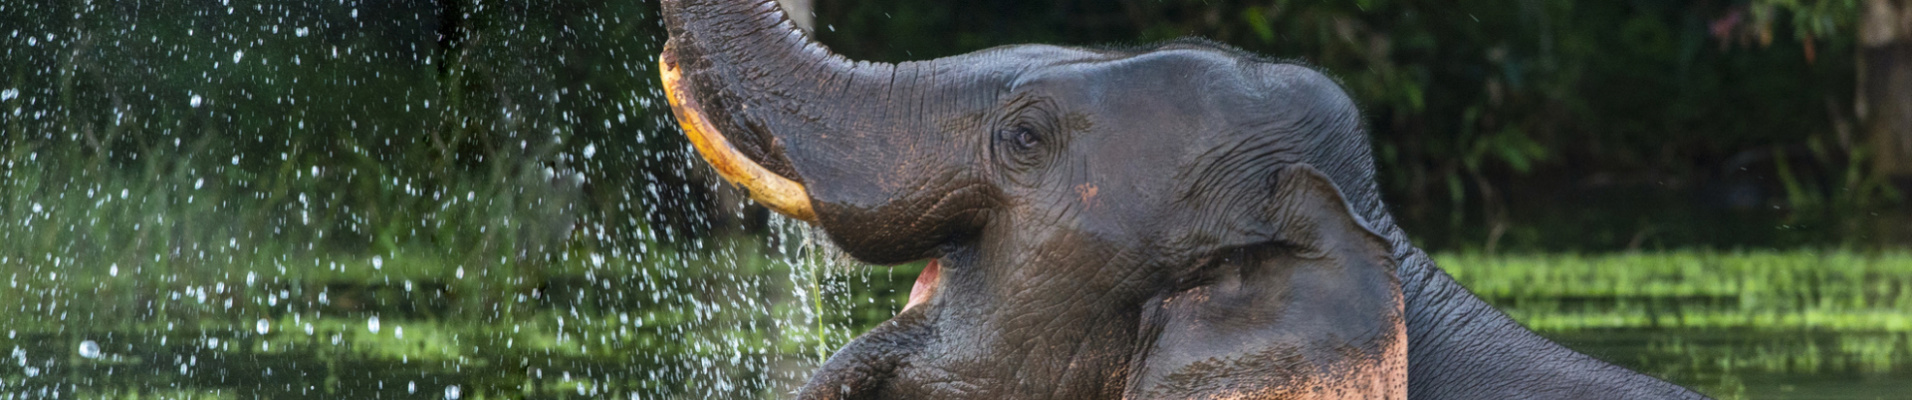 Elephant dans l'eau, Thaïlande